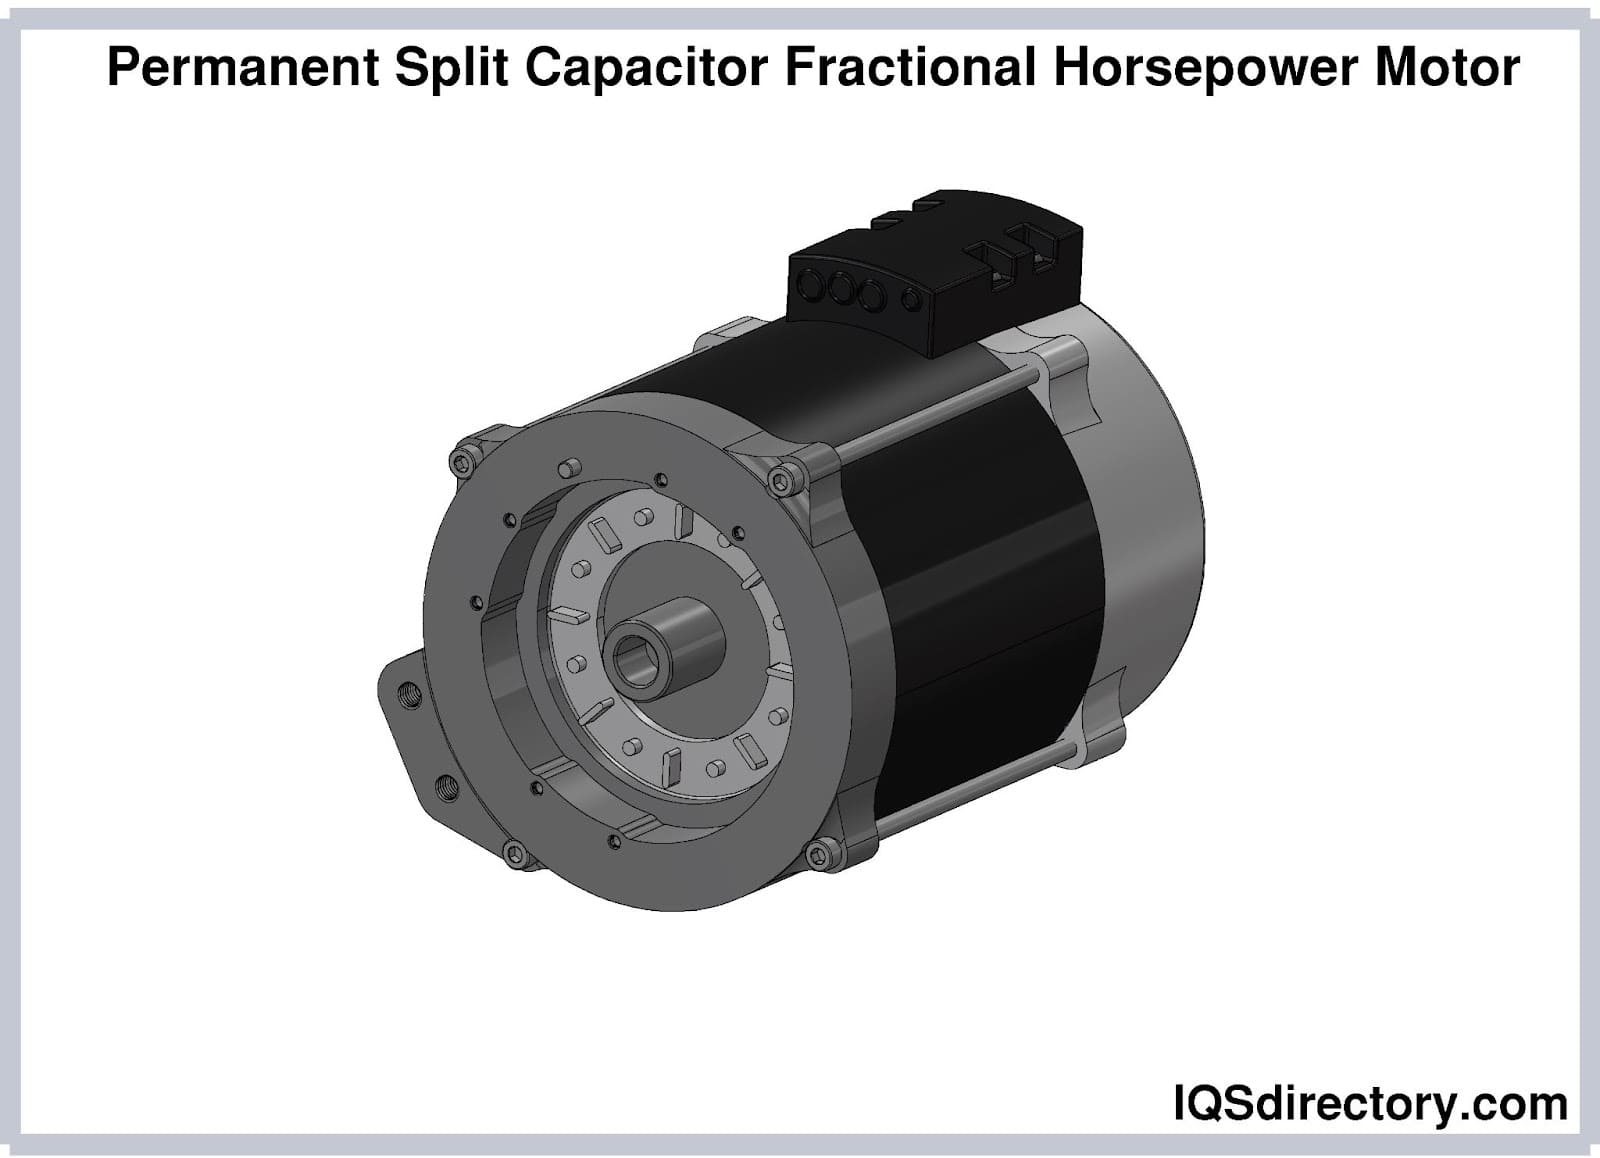 Permanent Split Capacitor Fractional Horsepower Motor